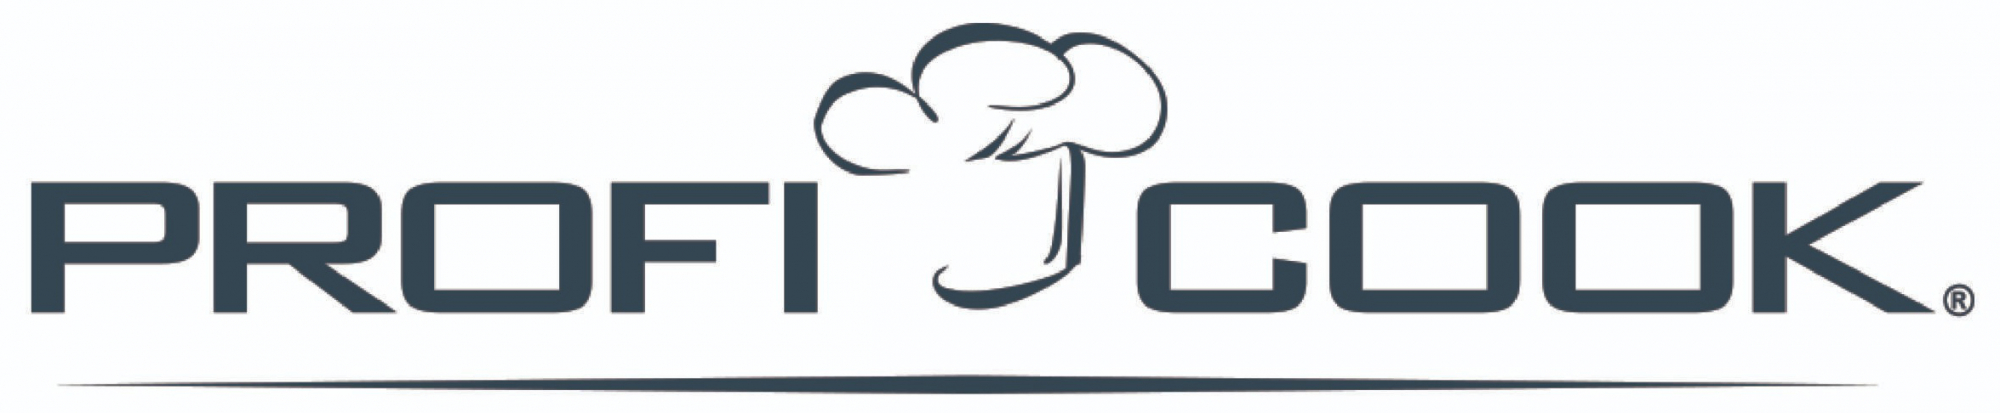 Логотип ProfiCook